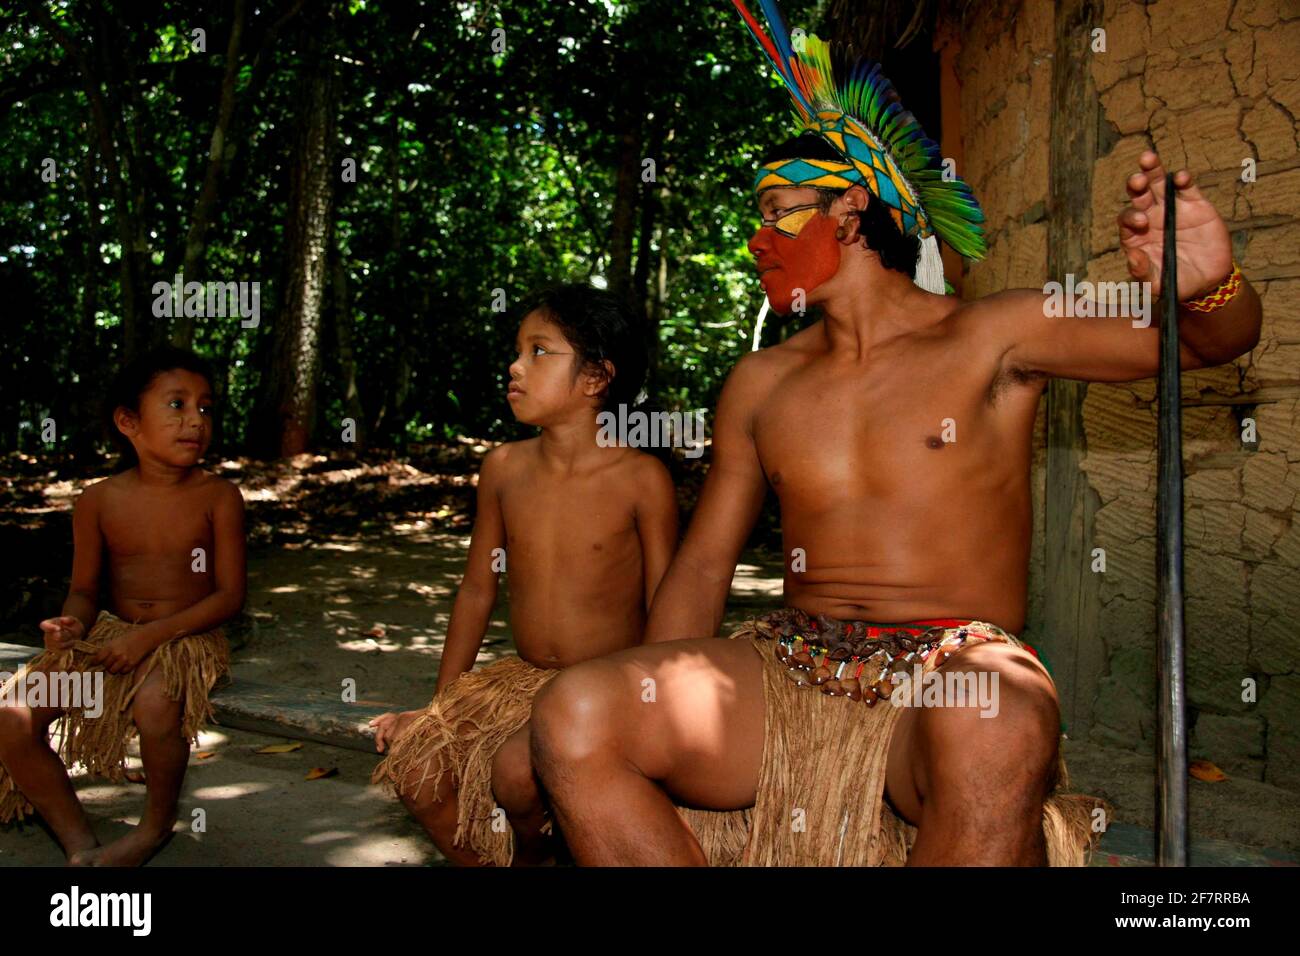 porto seguro, bahia / brasile - 21 febbraio 2008: L'India della Pataxo etina è visto allattare il suo bambino nel villaggio di Jaqueira nella città di Foto Stock